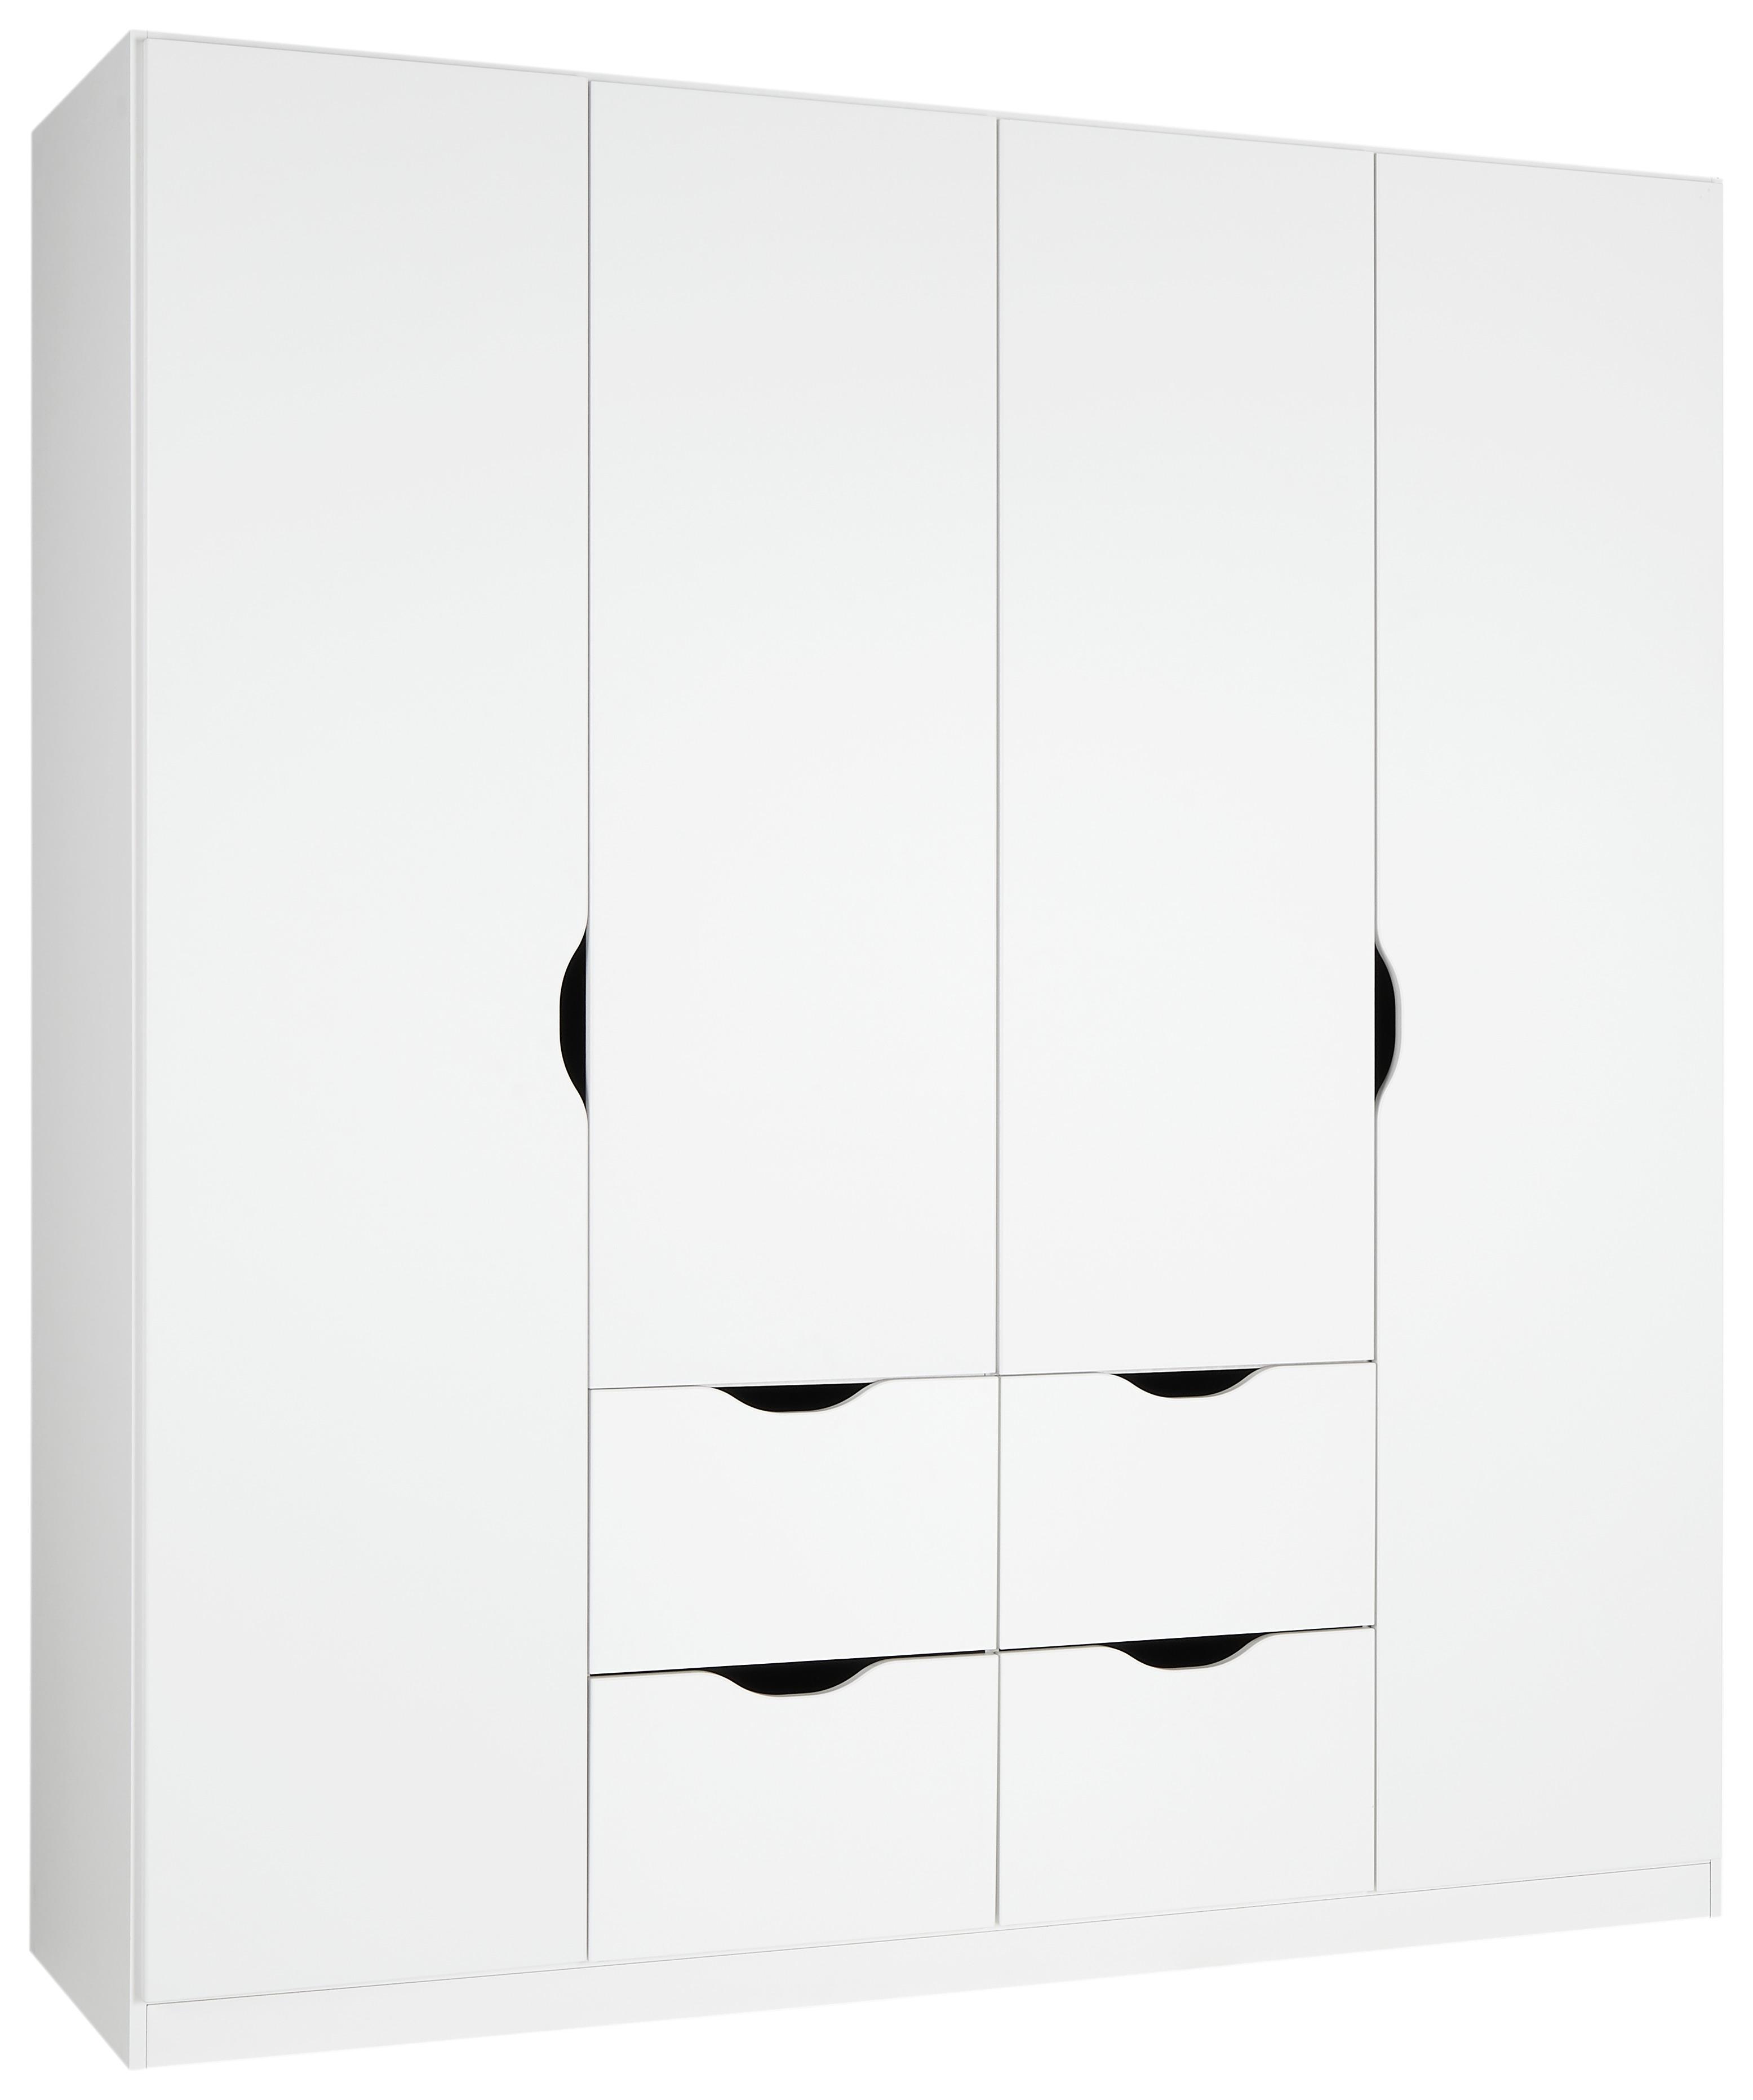 Omara S Klasičnimi Vrati White - bela, Konvencionalno, leseni material (181/197/54cm) - Modern Living